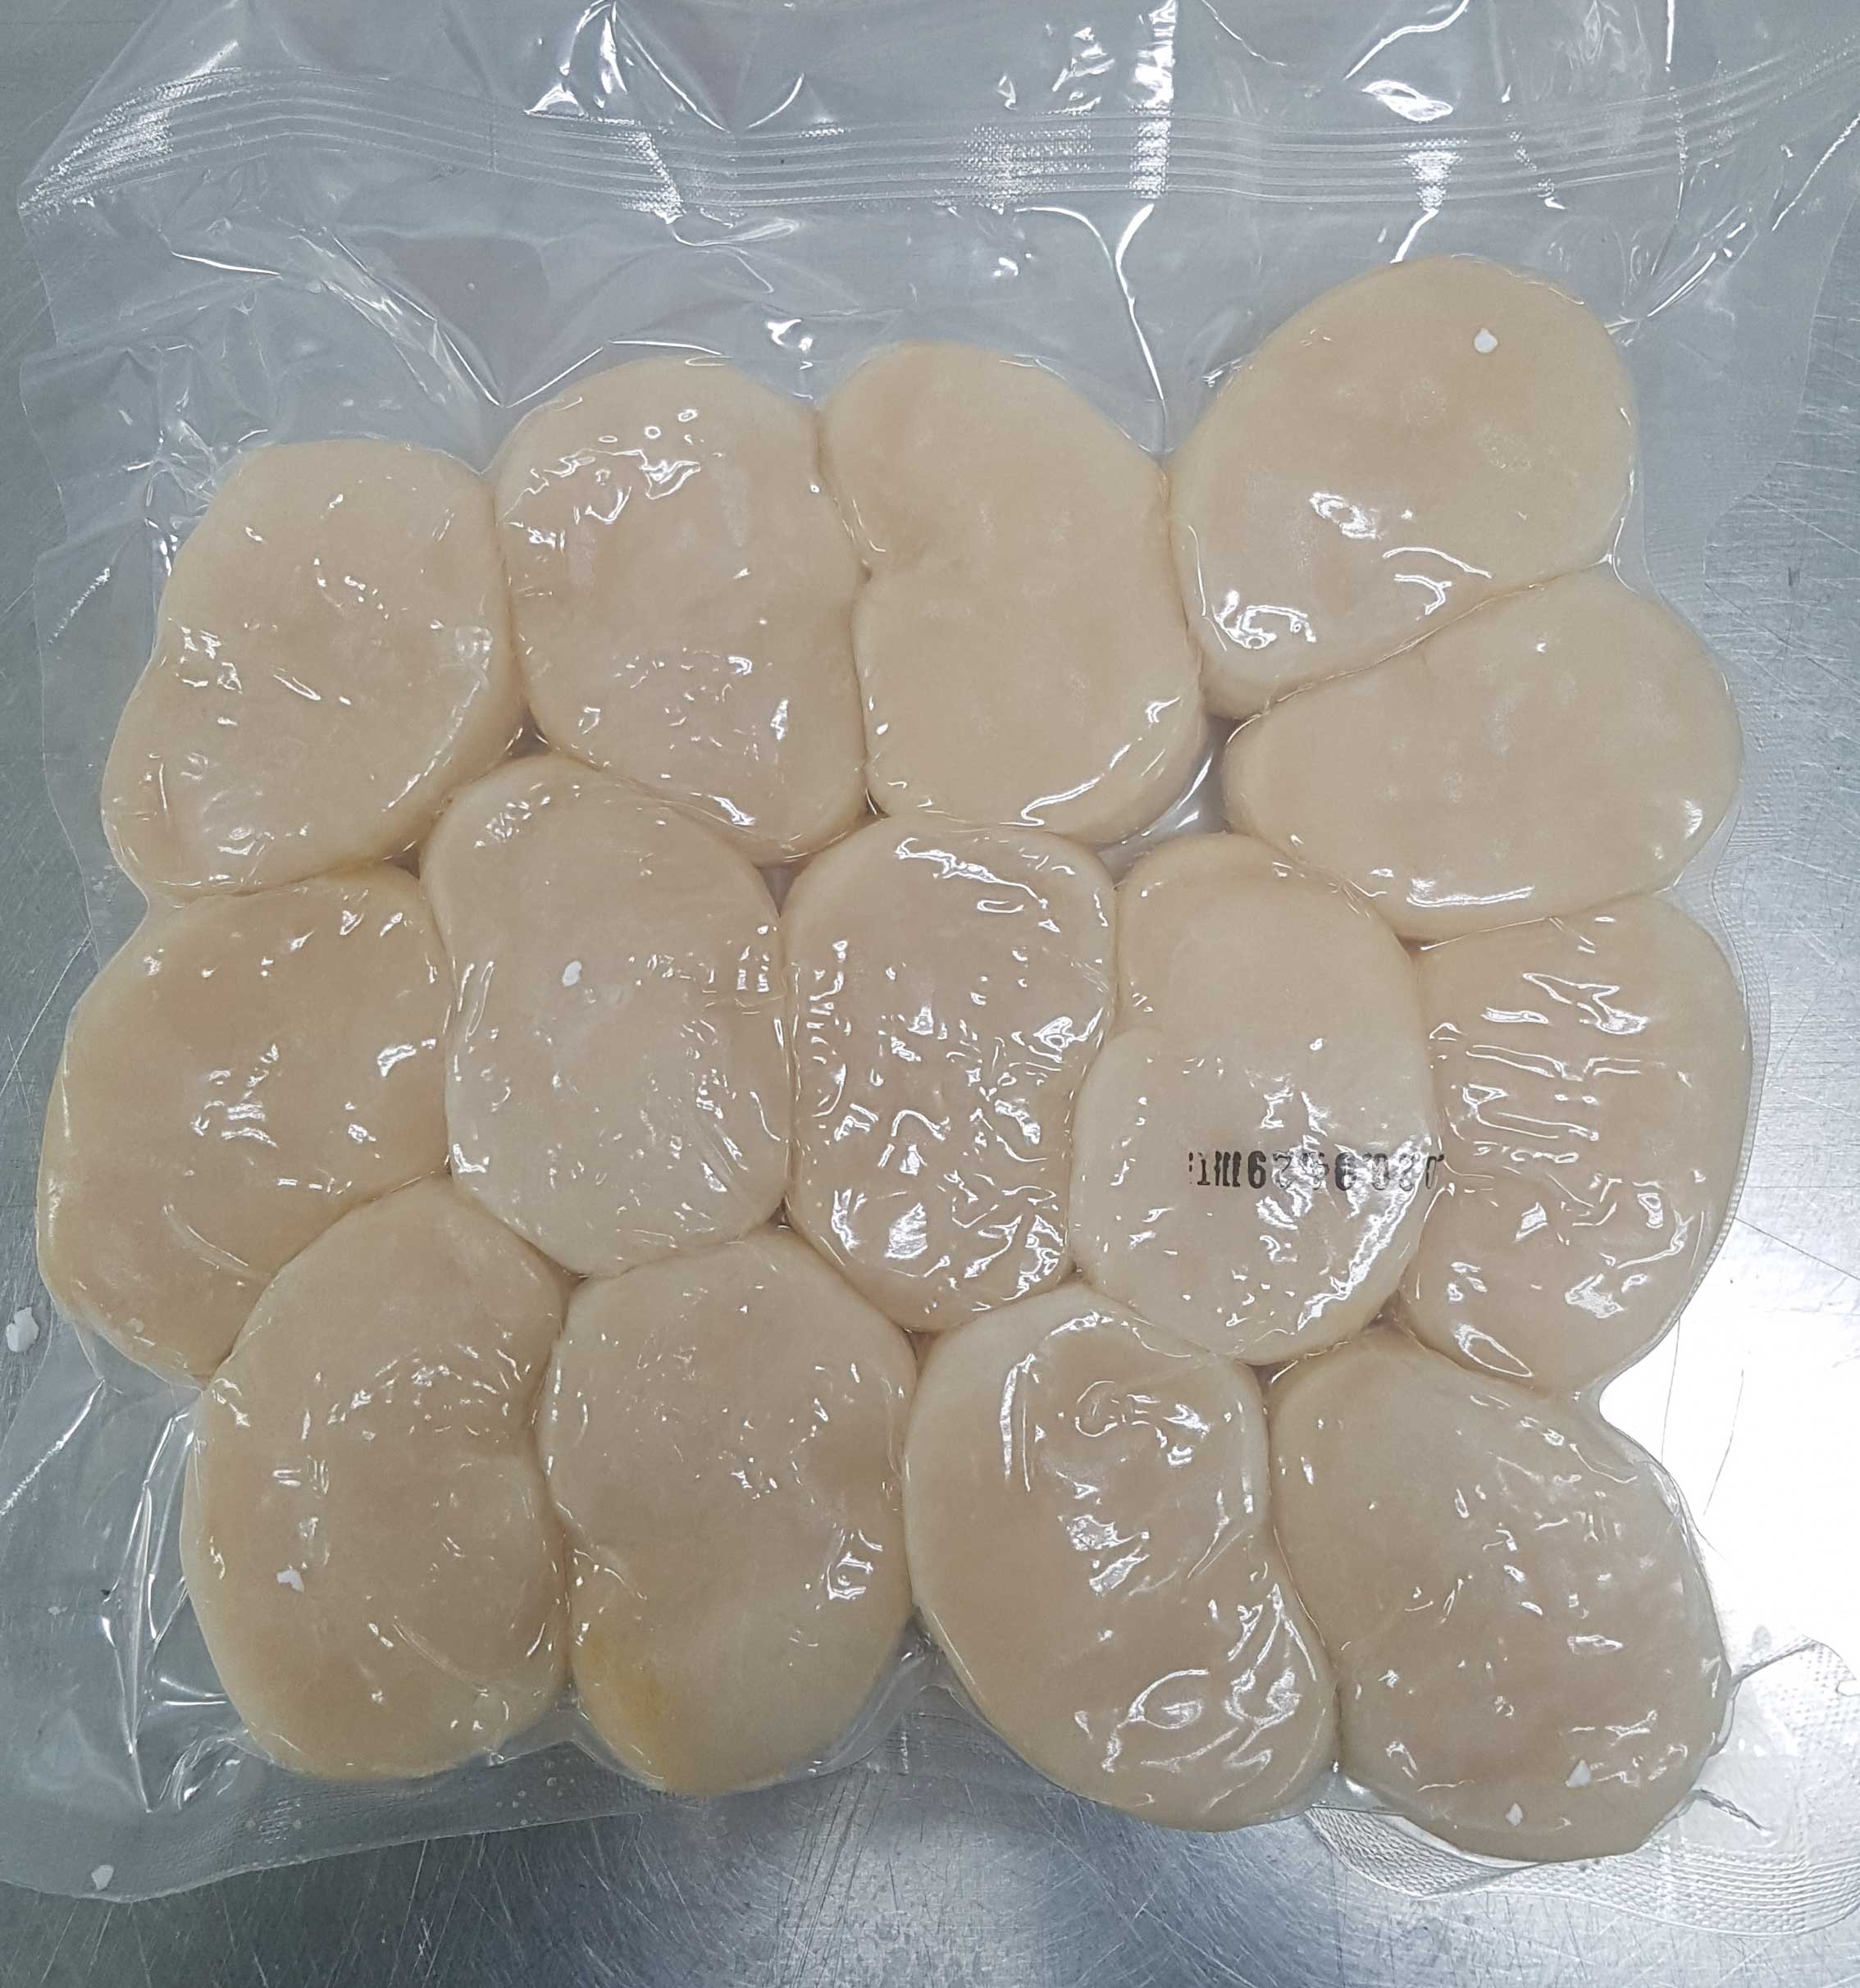 frozen penshell scallop meat 500g